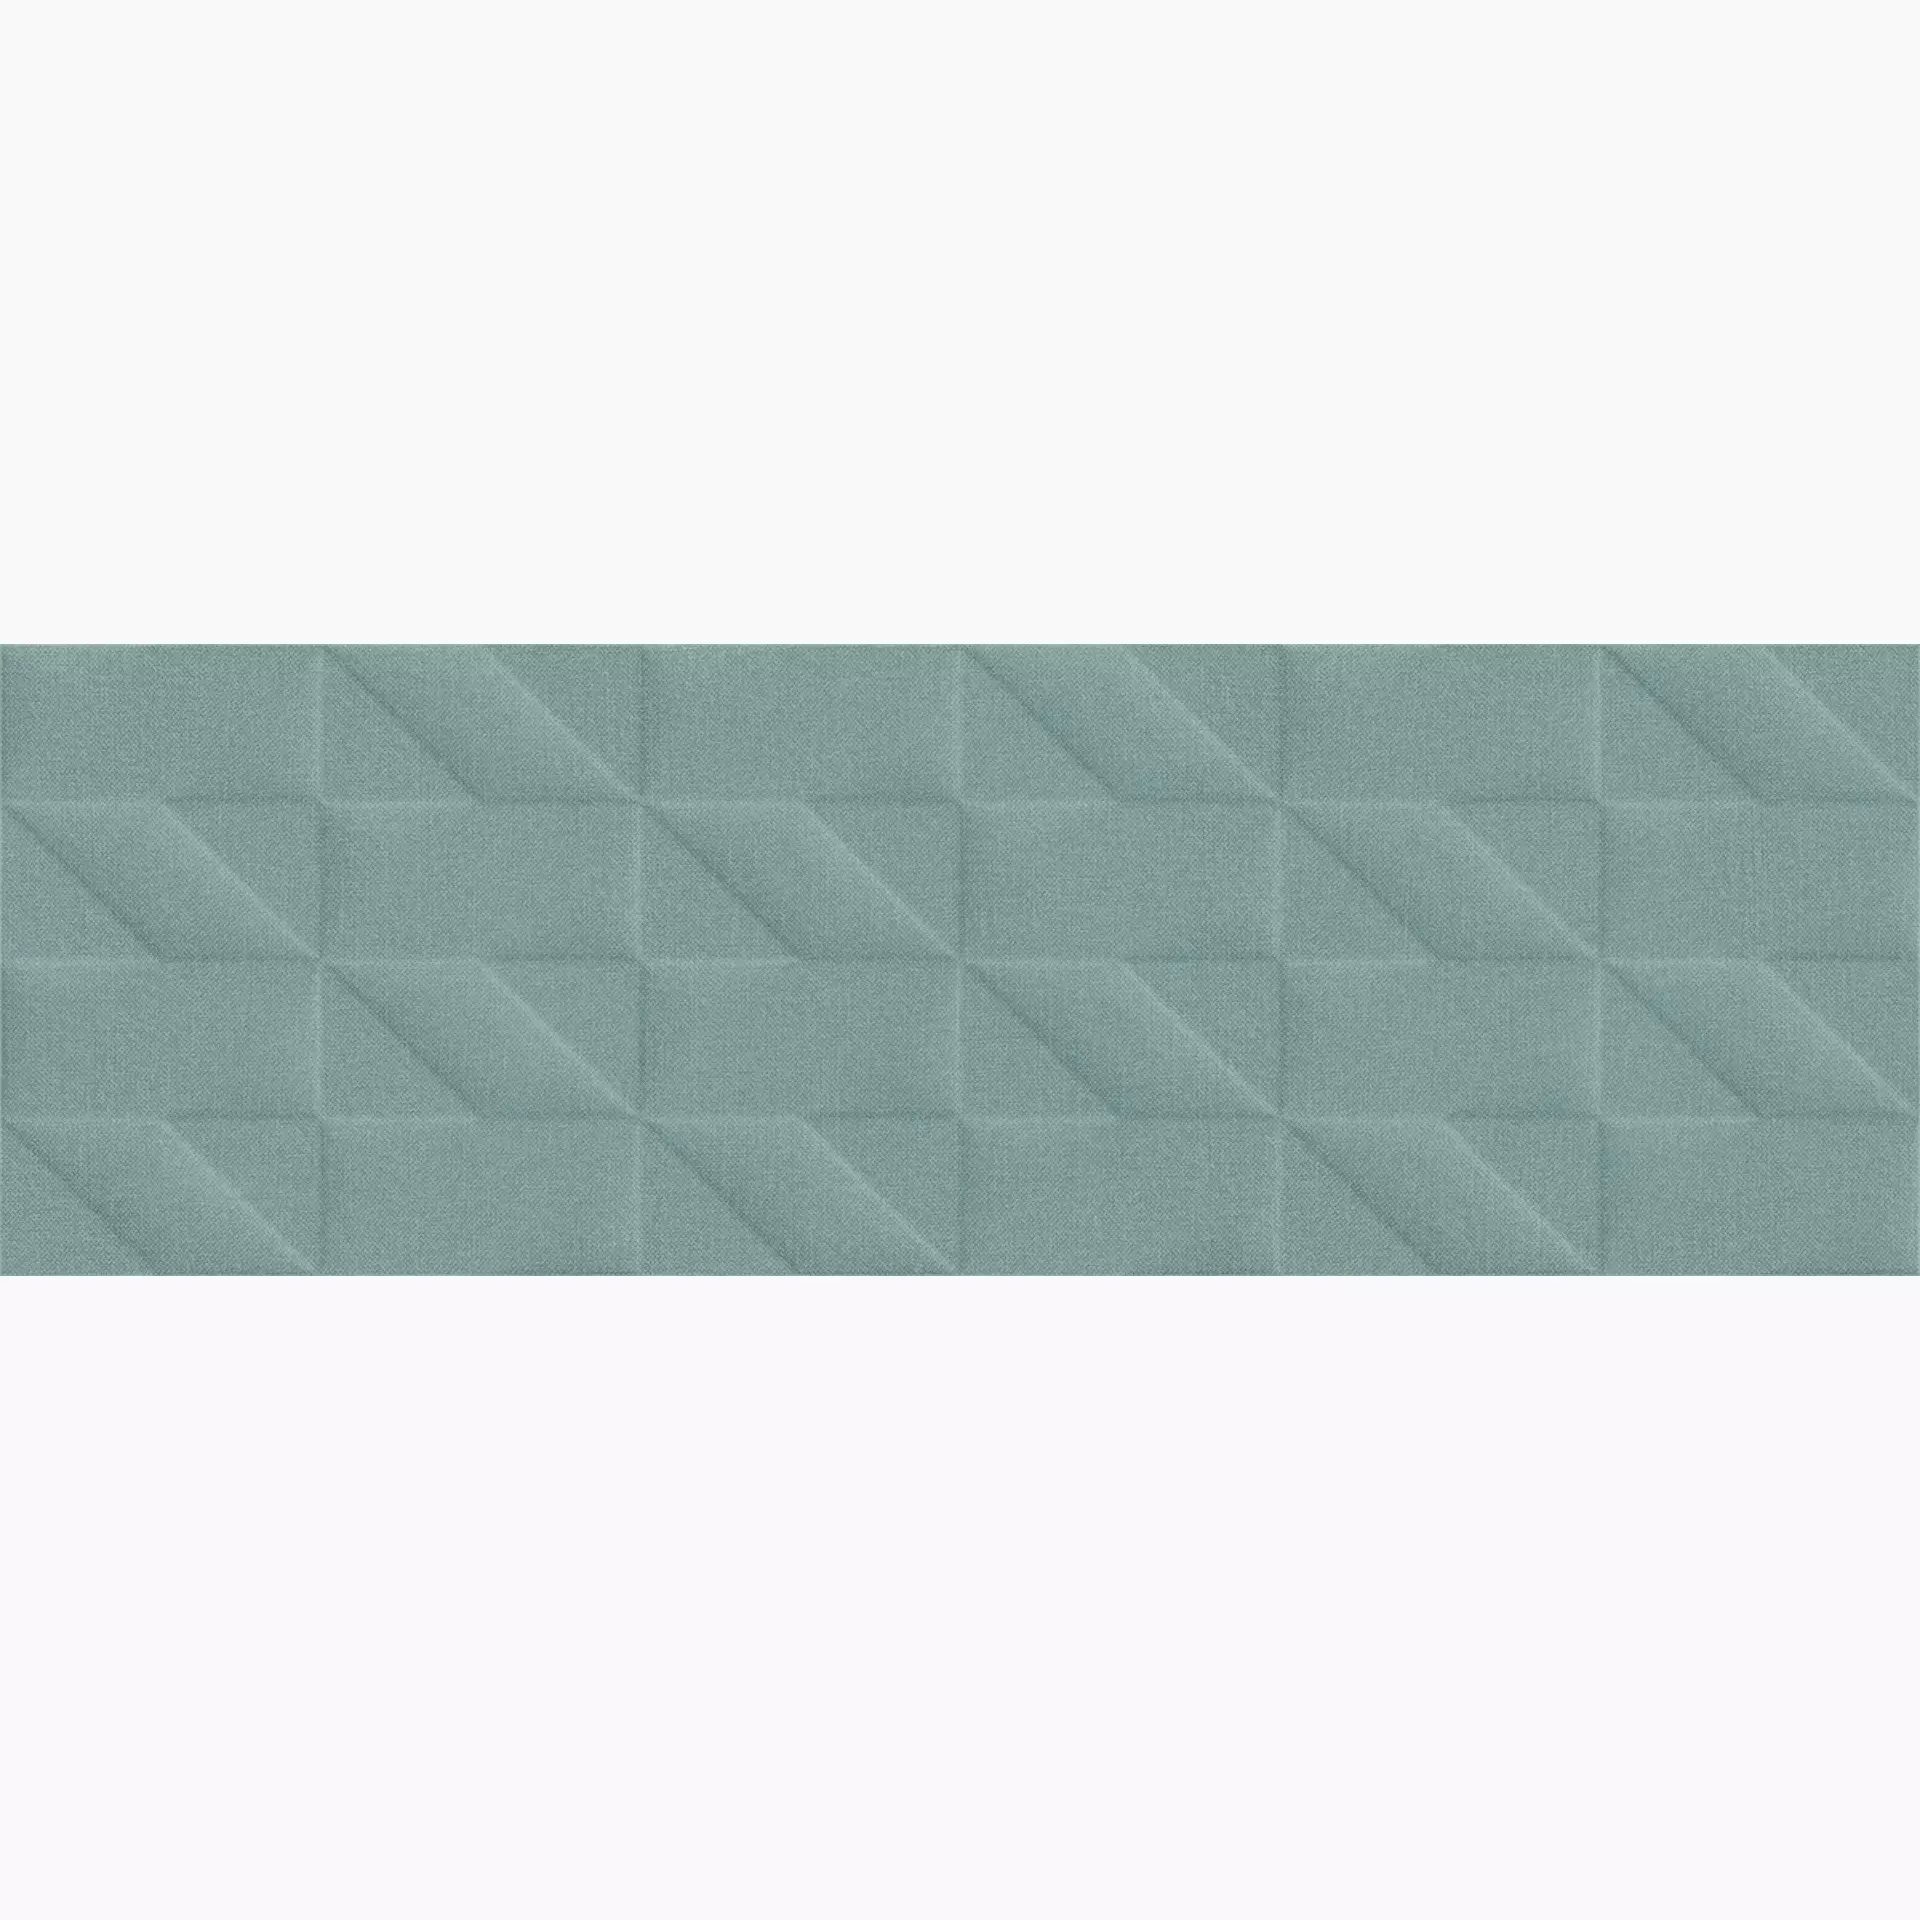 Marazzi Outfit Turquoise Struttura Tetris 3D M129 25x76cm 9mm